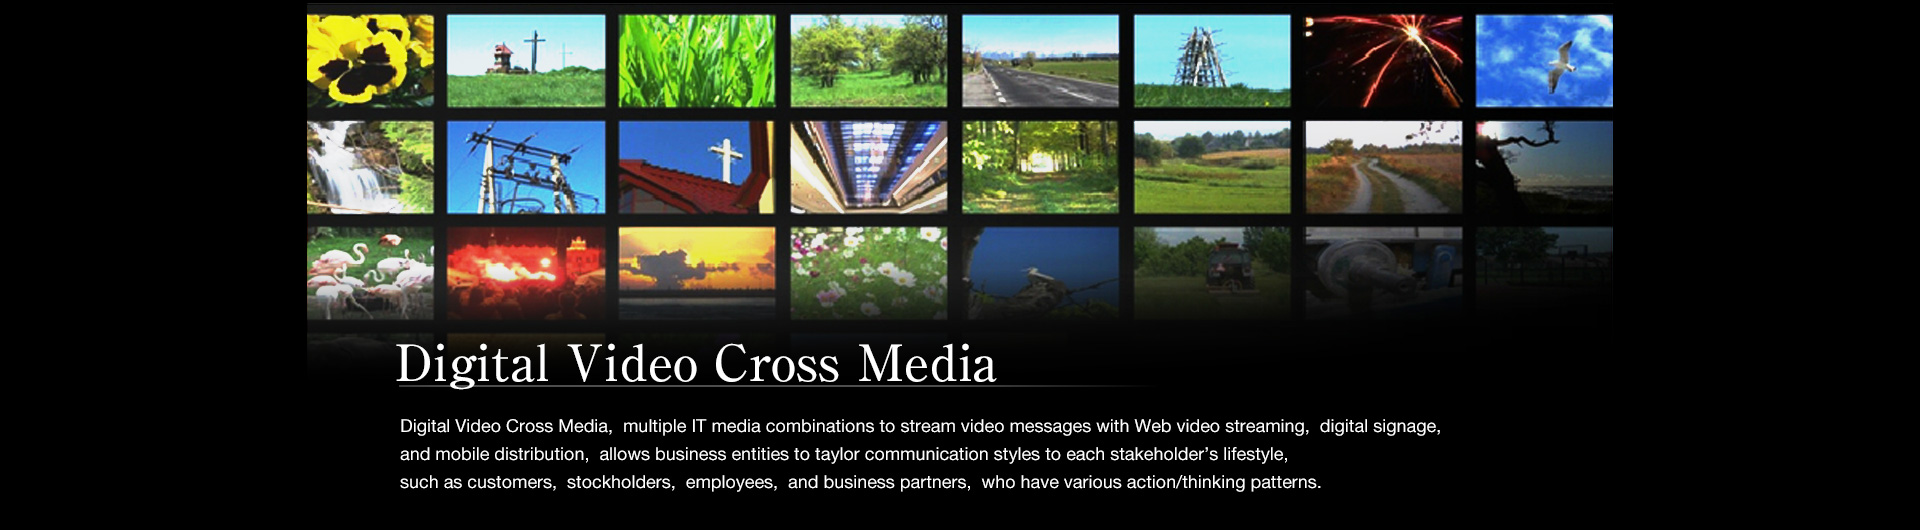 Digital Video Cross Media